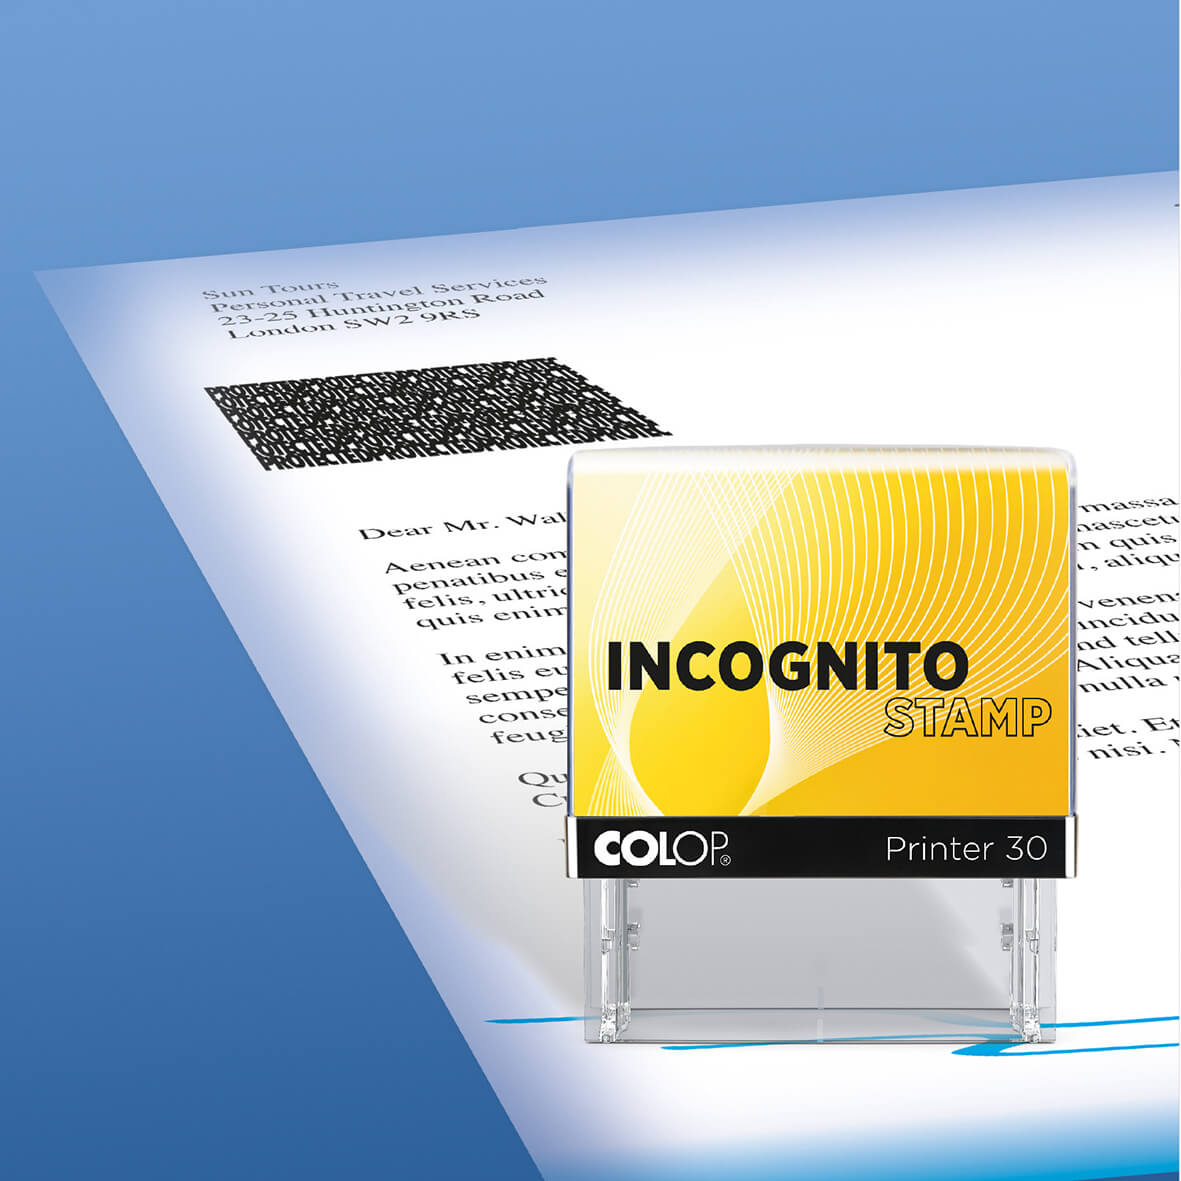  Printer 30 Incognito